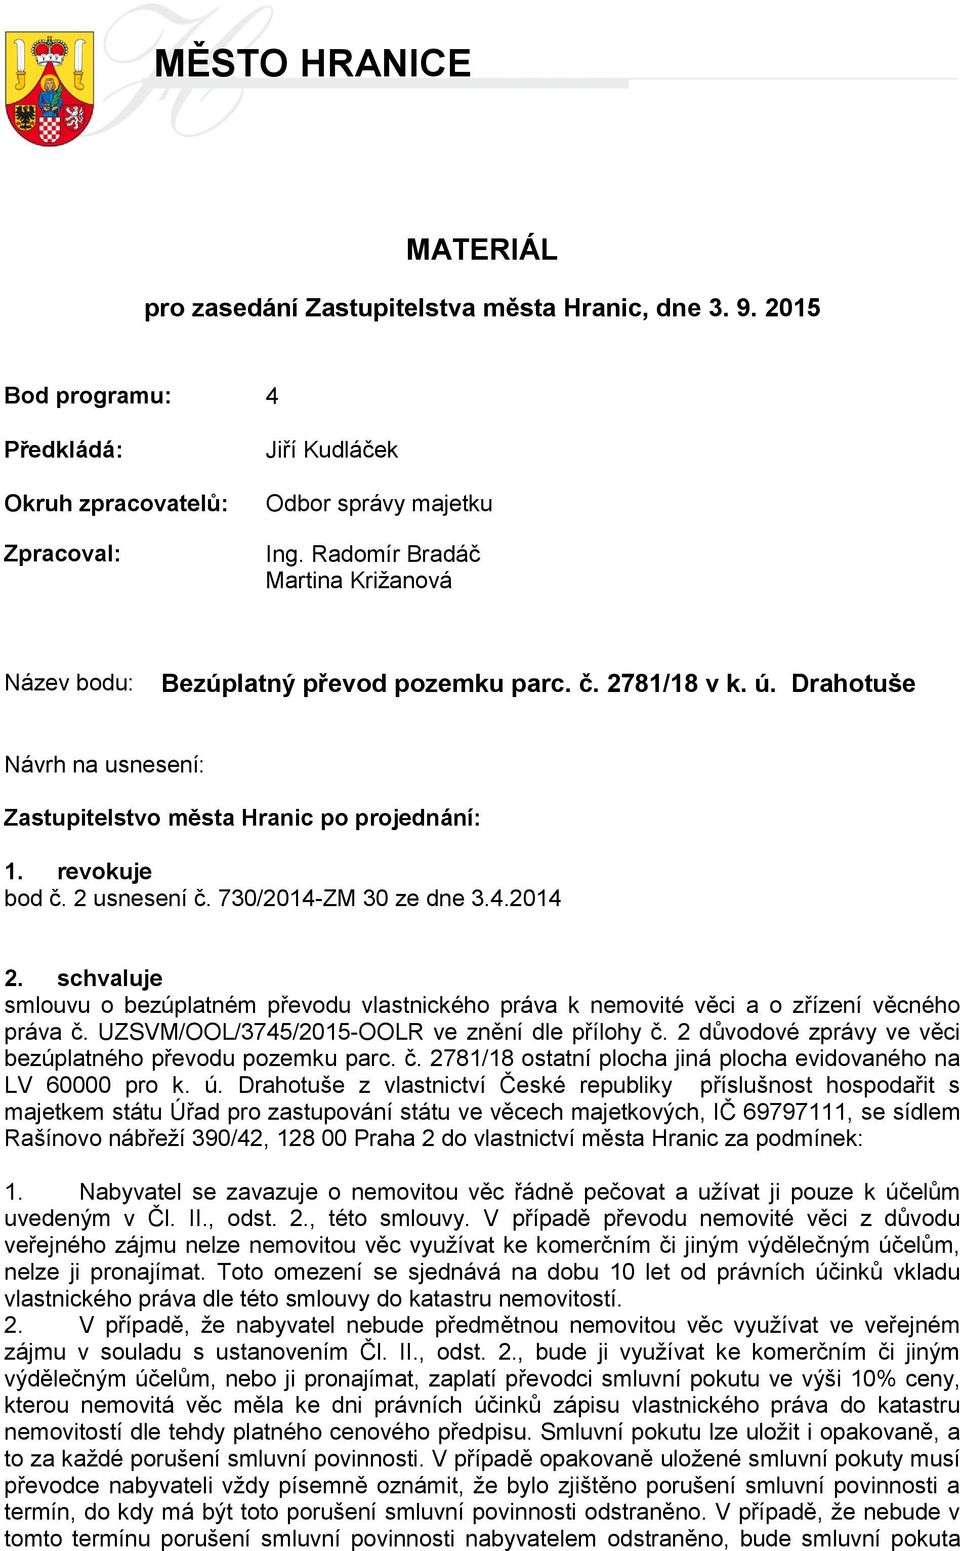 730/2014-ZM 30 ze dne 3.4.2014 2. schvaluje smlouvu o bezúplatném převodu vlastnického práva k nemovité věci a o zřízení věcného práva č. UZSVM/OOL/3745/2015-OOLR ve znění dle přílohy č.